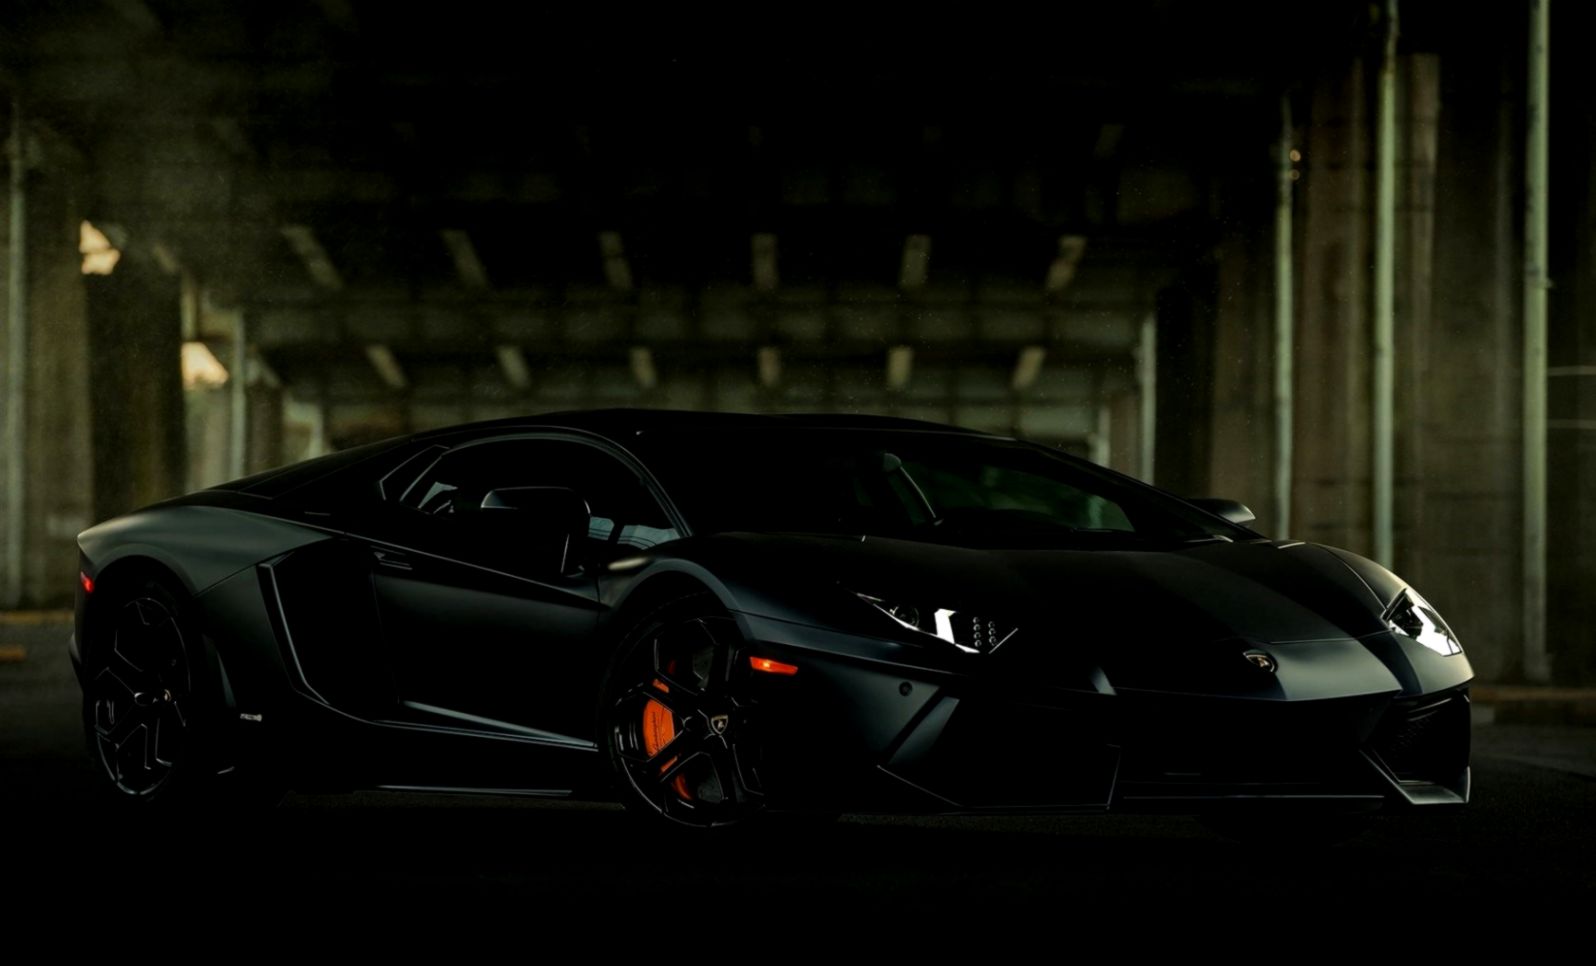 [72+] Black Lamborghini Wallpaper | WallpaperSafari.com